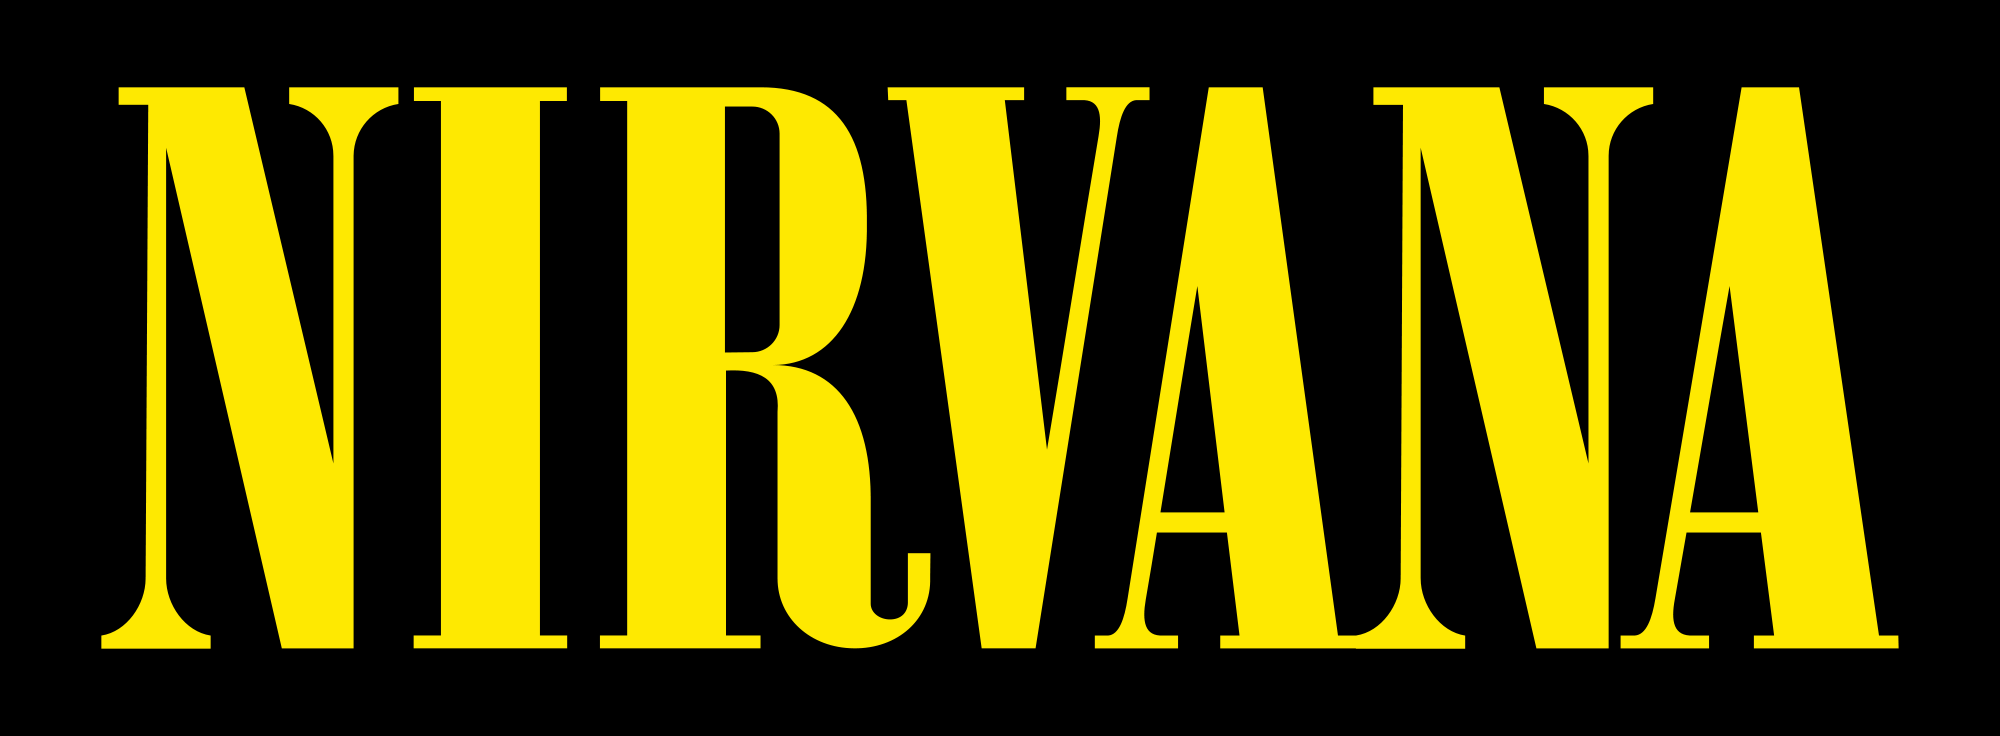 Nirvana Band Logo - Nirvana Logo - Free Transparent PNG Logos